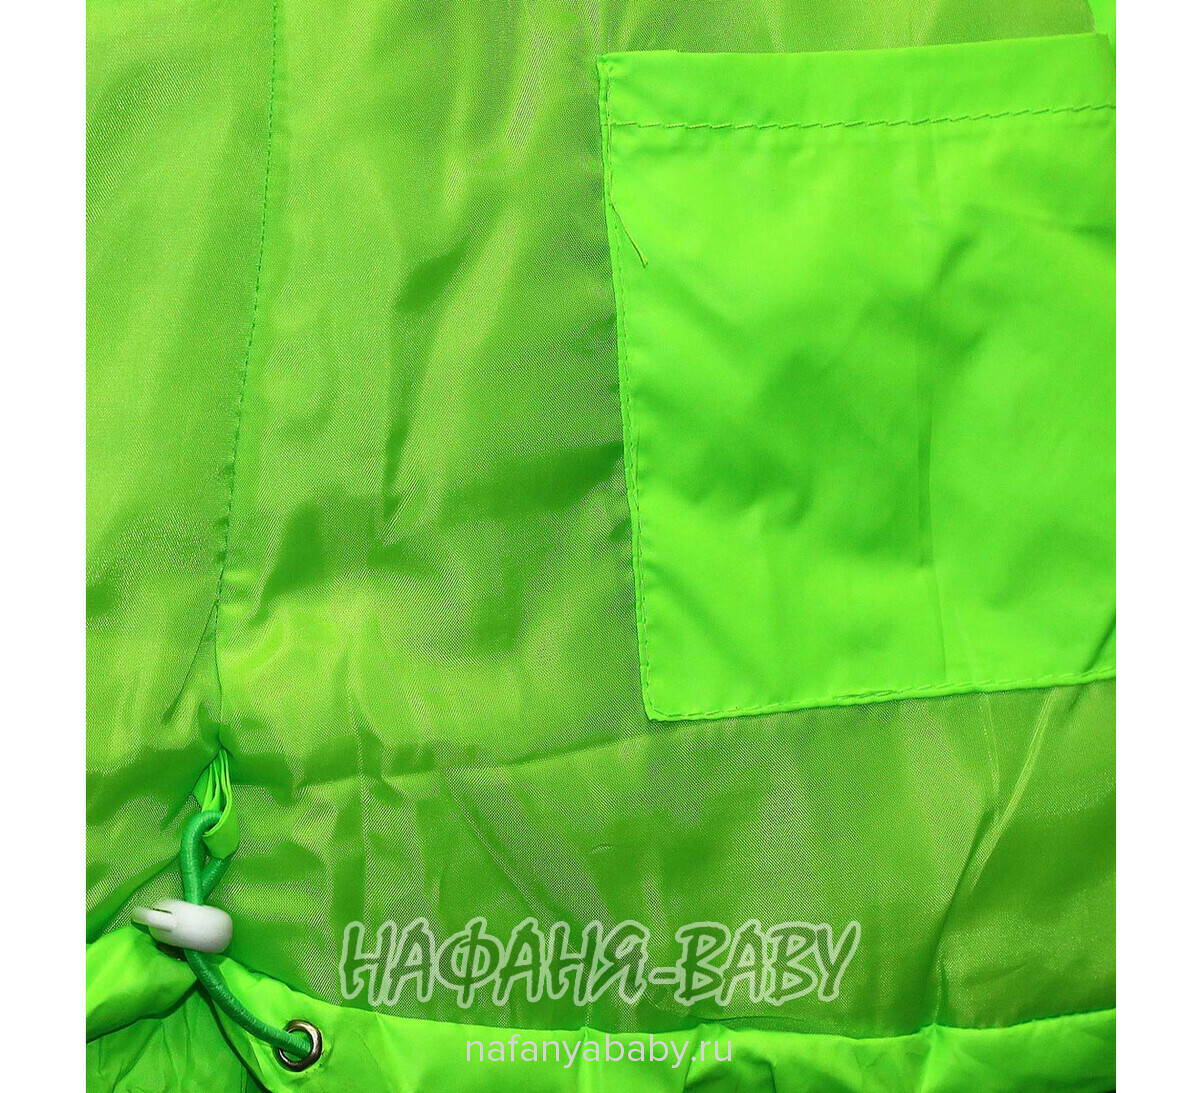 Зимний костюм (куртка+полукомбинезон+шарфик) DANPING, купить в интернет магазине Нафаня. арт: 6608.